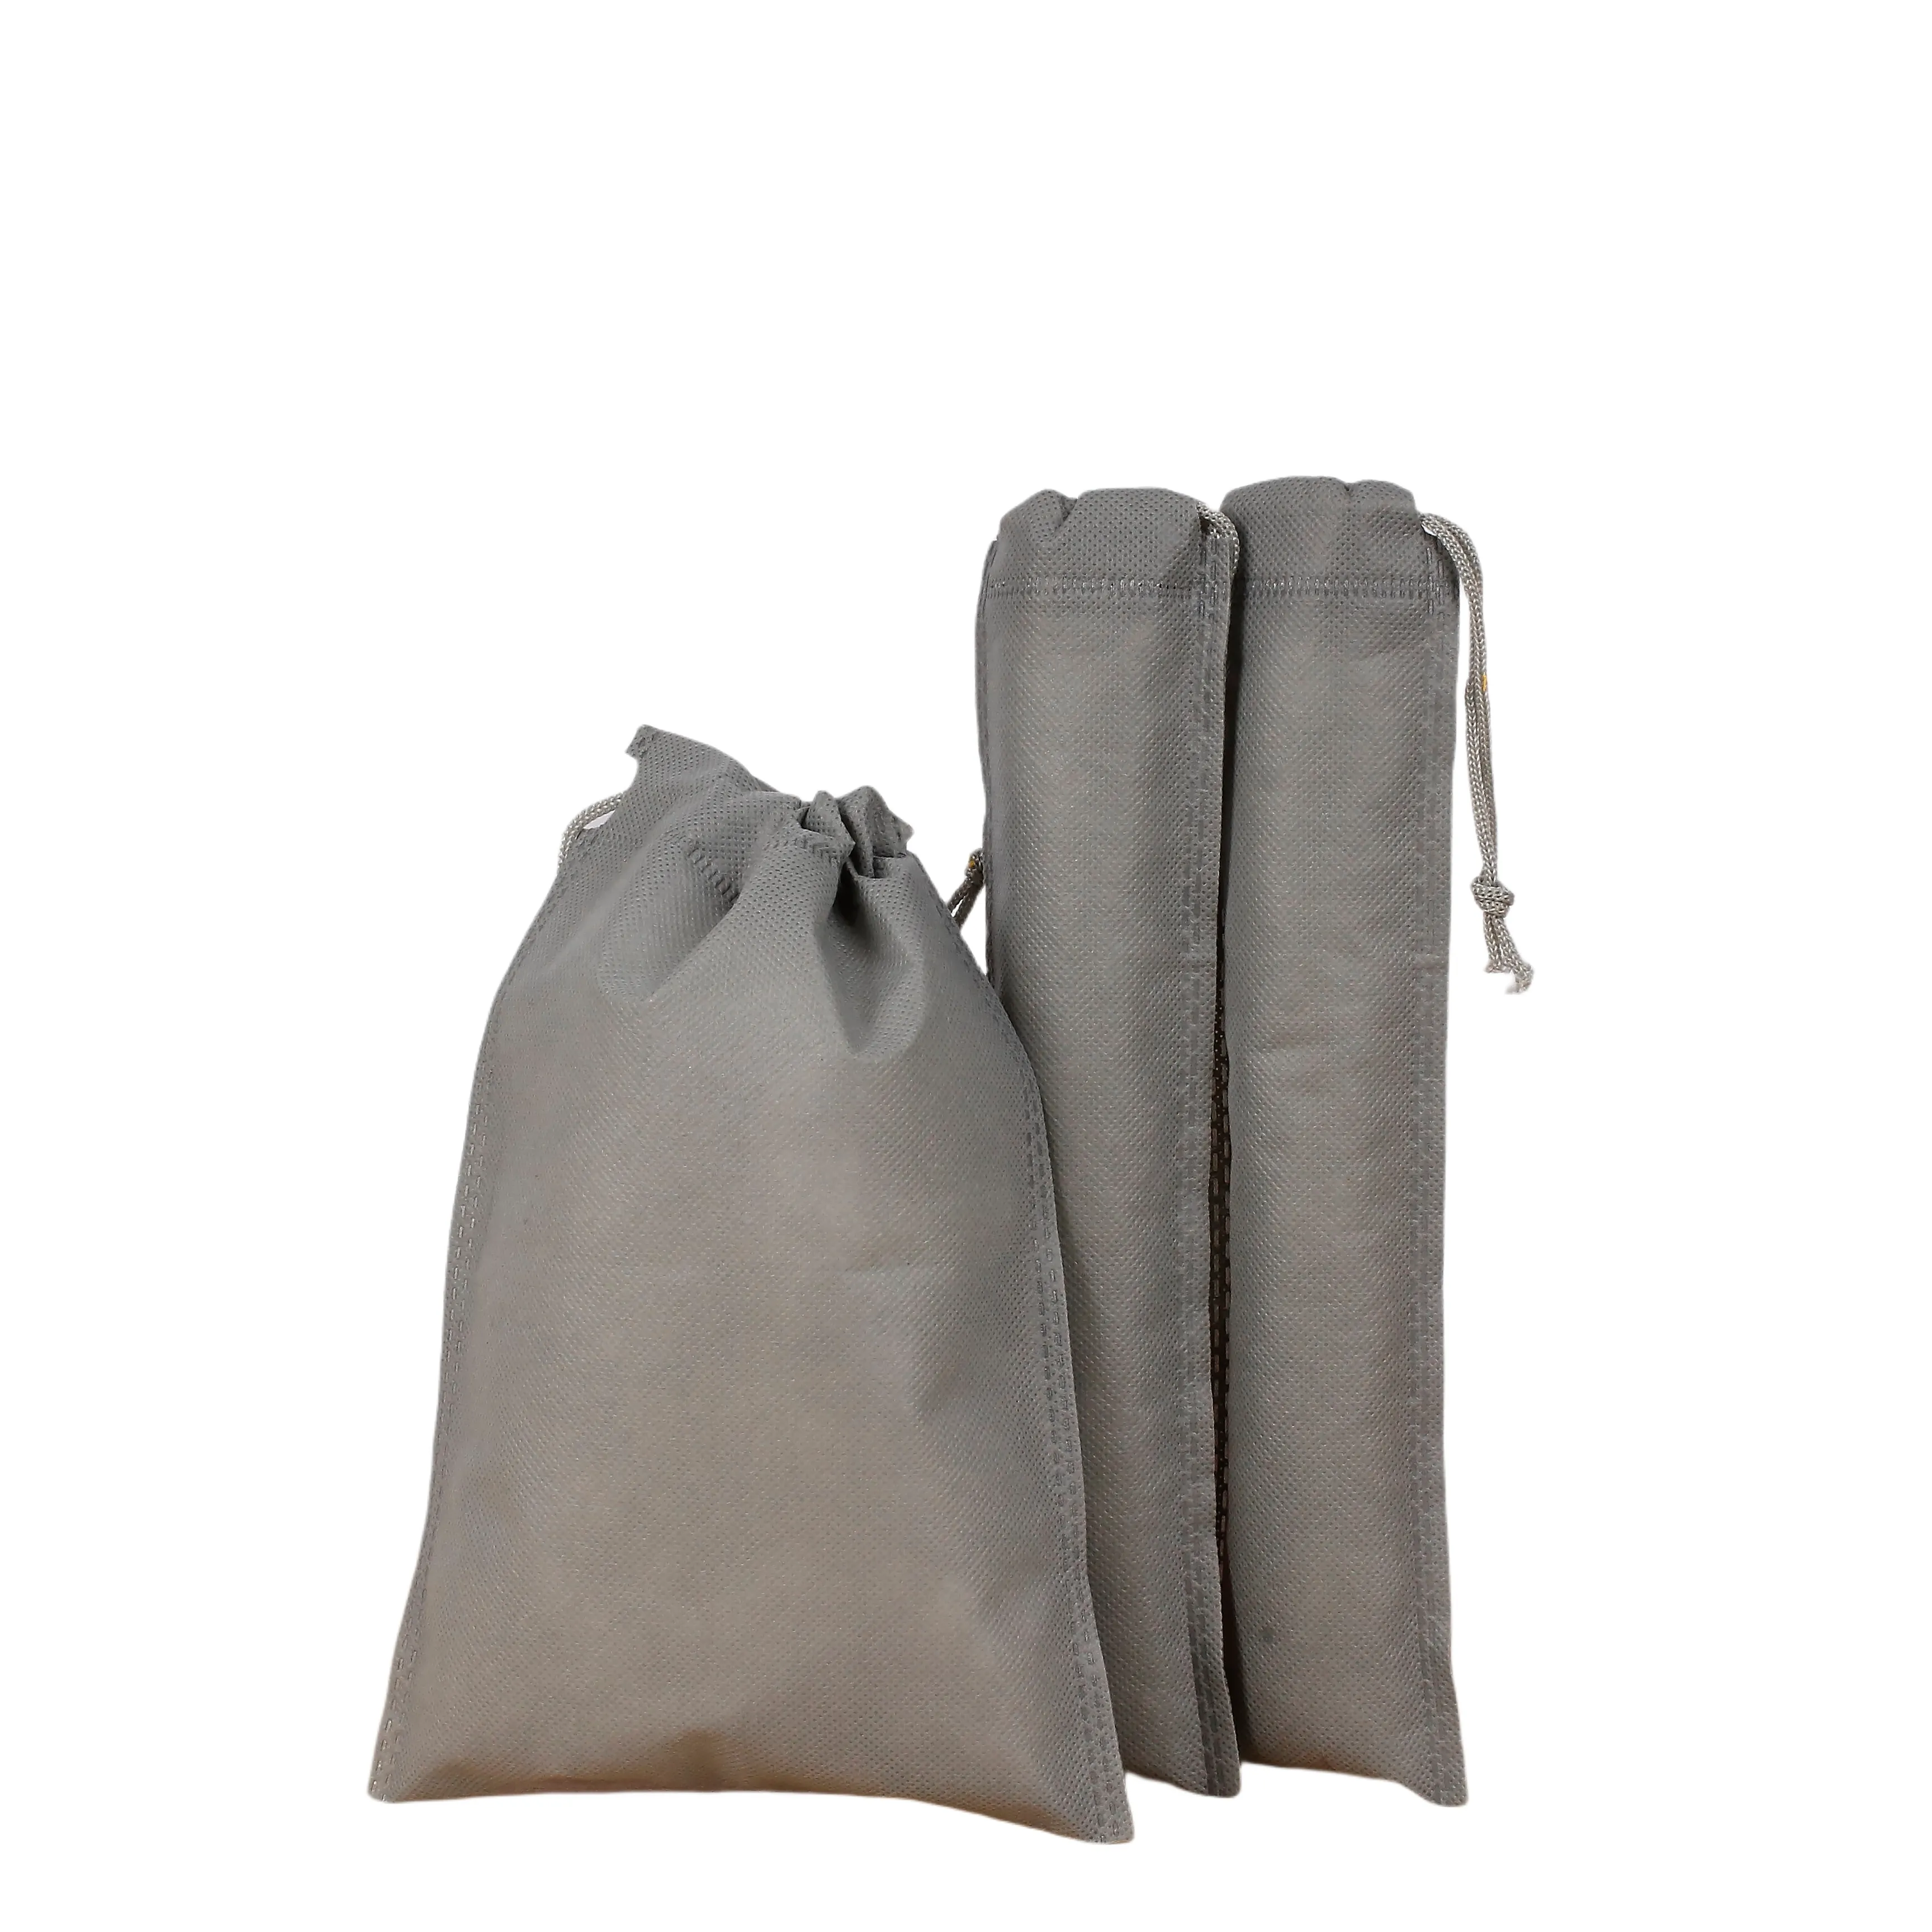 Bolsa de tecido não tecido reutilizável personalizada com cordão, saco de pó ecológico para sapatos, bolsa de armazenamento com cordão